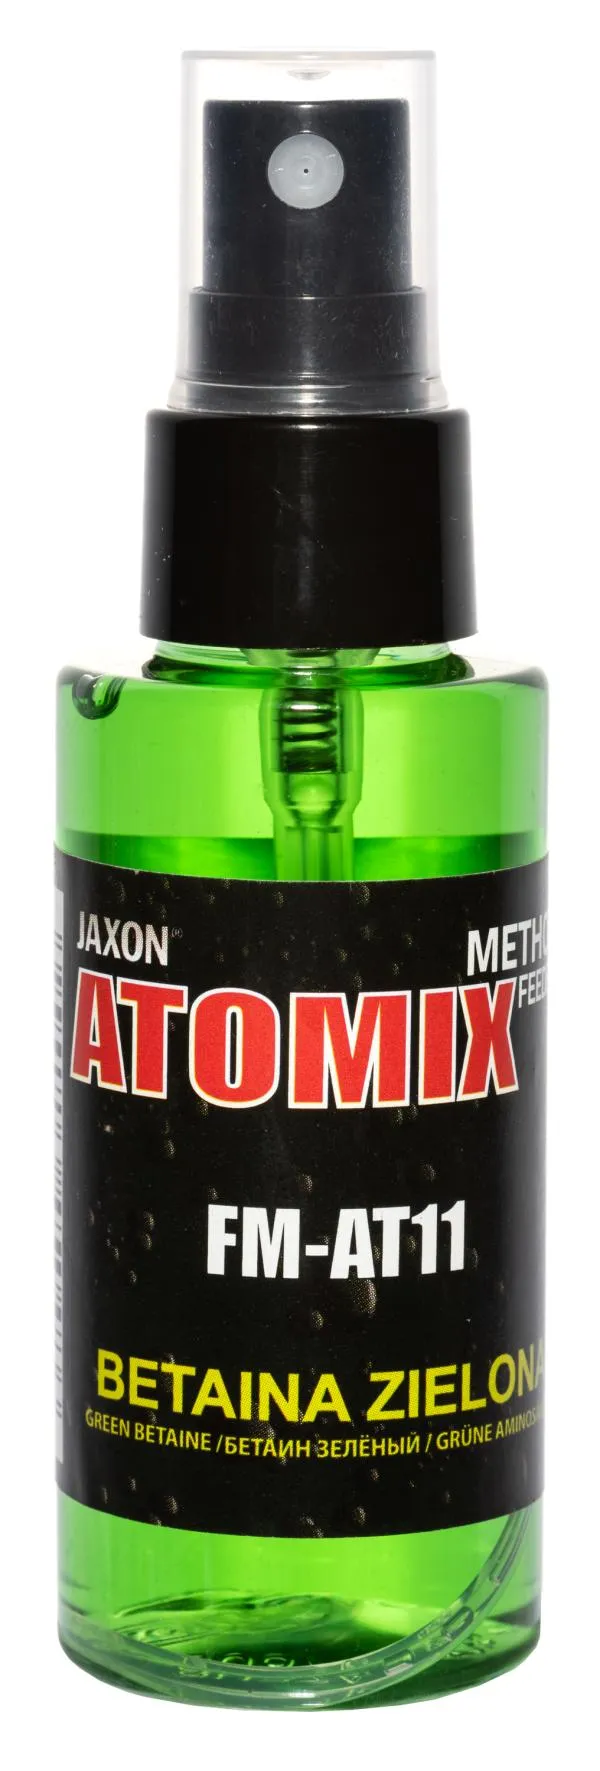 SNECI - Horgász webshop és horgászbolt - JAXON ATOMIX - GREEN BETAINE 50g aroma